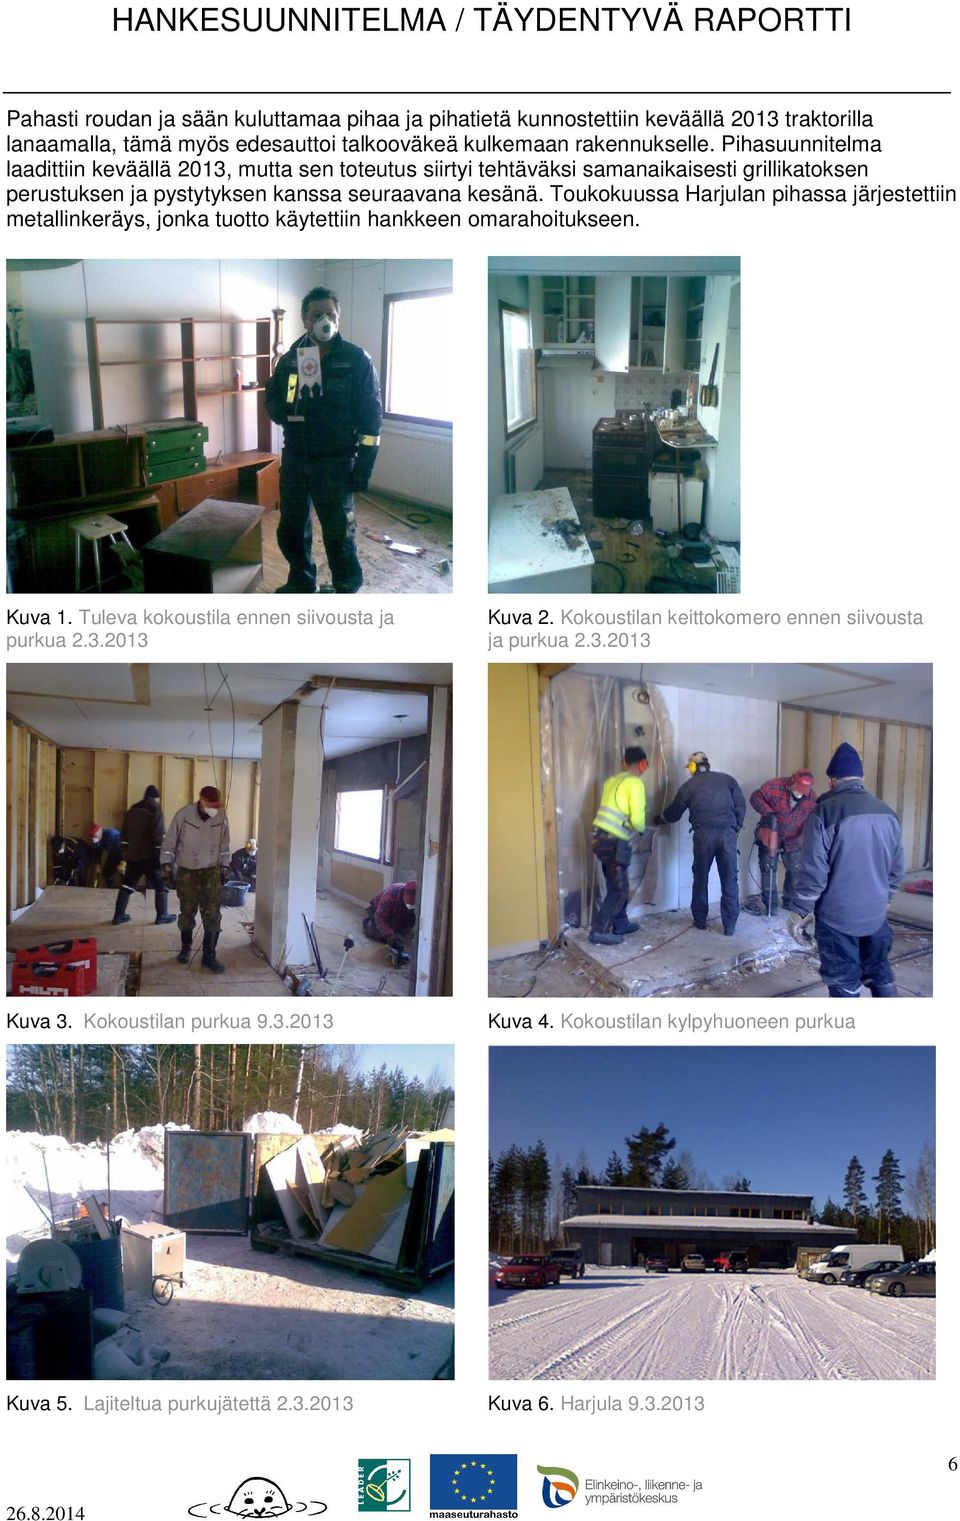 Toukokuussa Harjulan pihassa järjestettiin metallinkeräys, jonka tuotto käytettiin hankkeen omarahoitukseen. Kuva 1. Tuleva kokoustila ennen siivousta ja purkua 2.3.2013 Kuva 2.